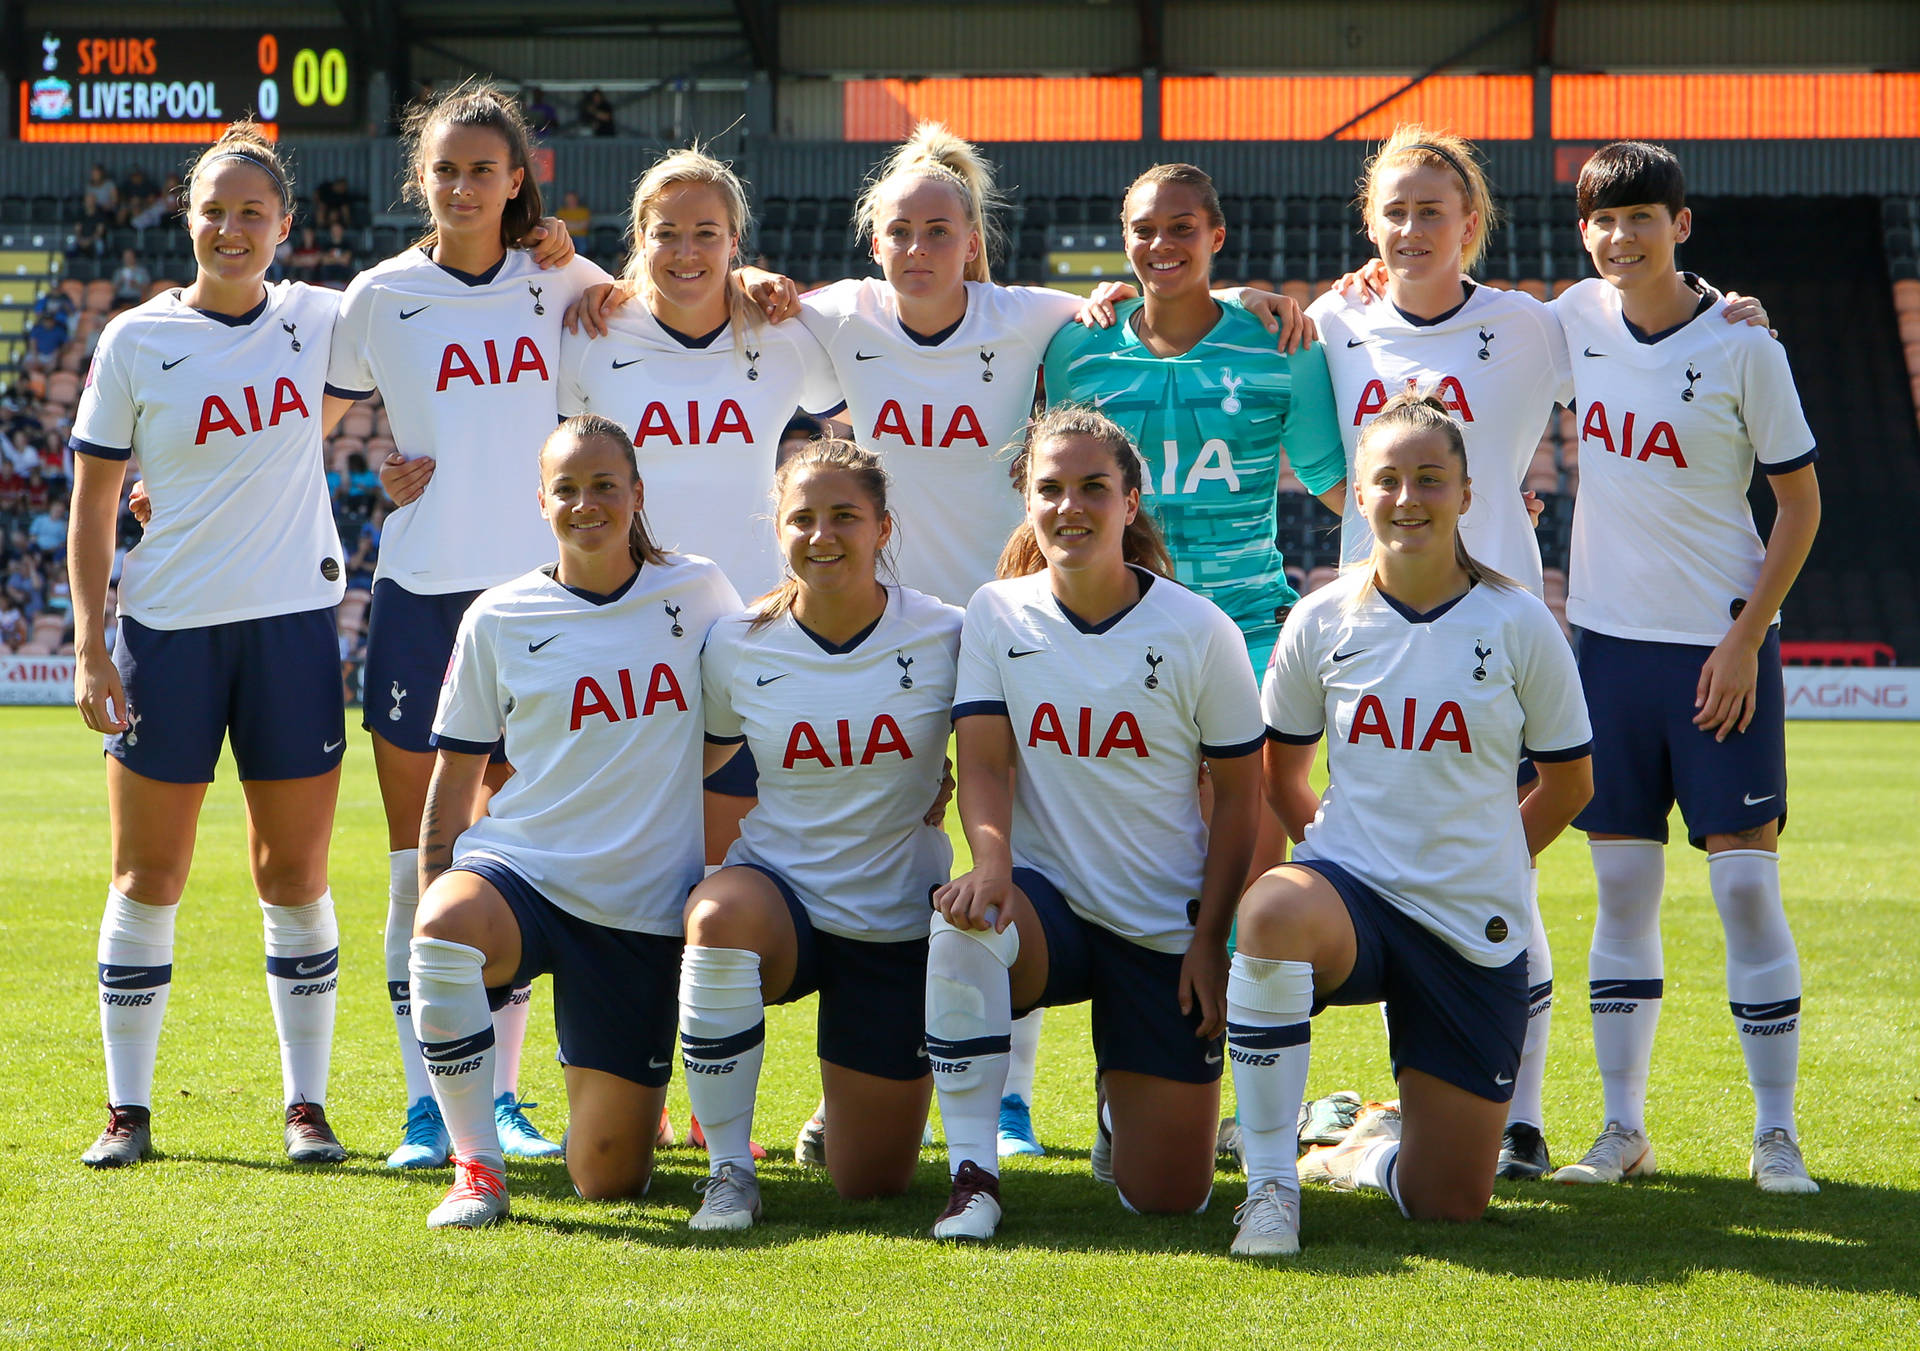 Tottenhamhotspur Fc Women - Tottenham Hotspur Fc Kvinnor. Wallpaper